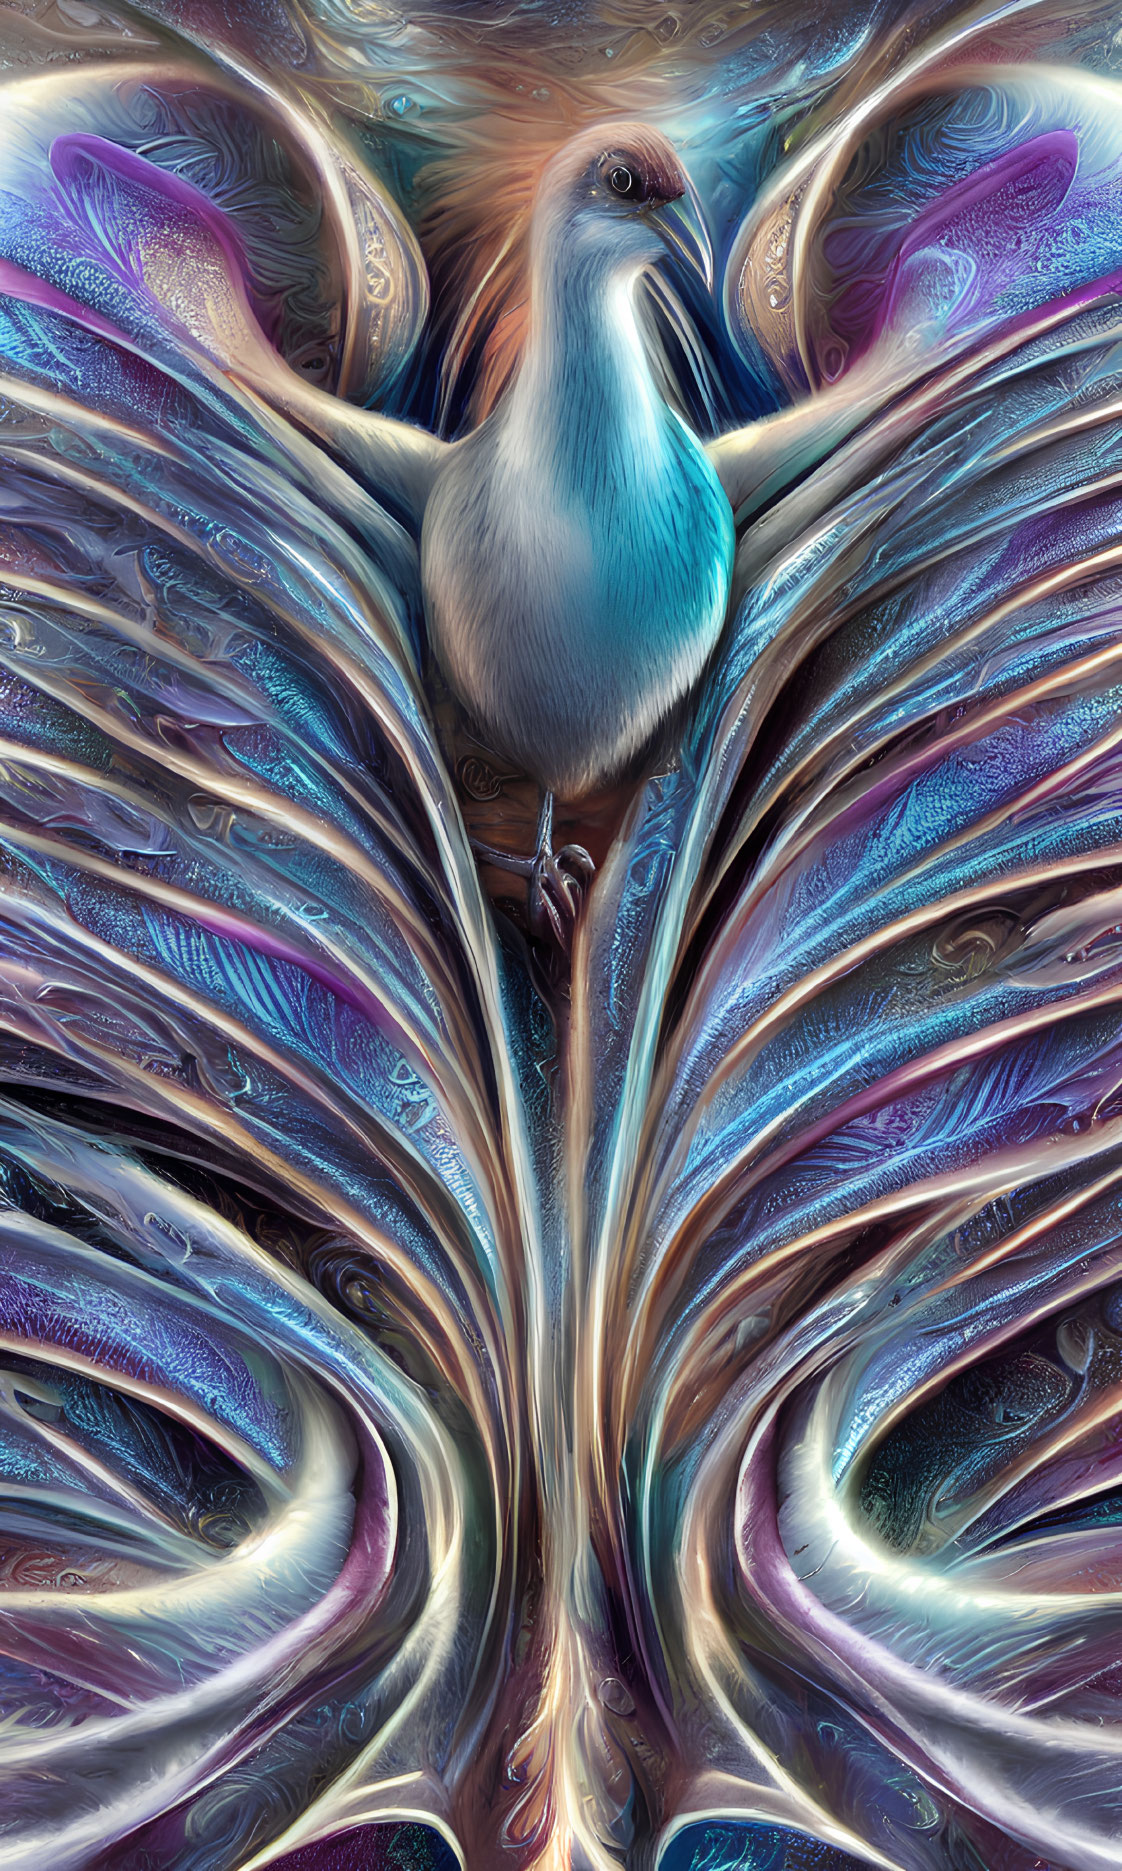 Vibrant blue bird on iridescent metallic swirls